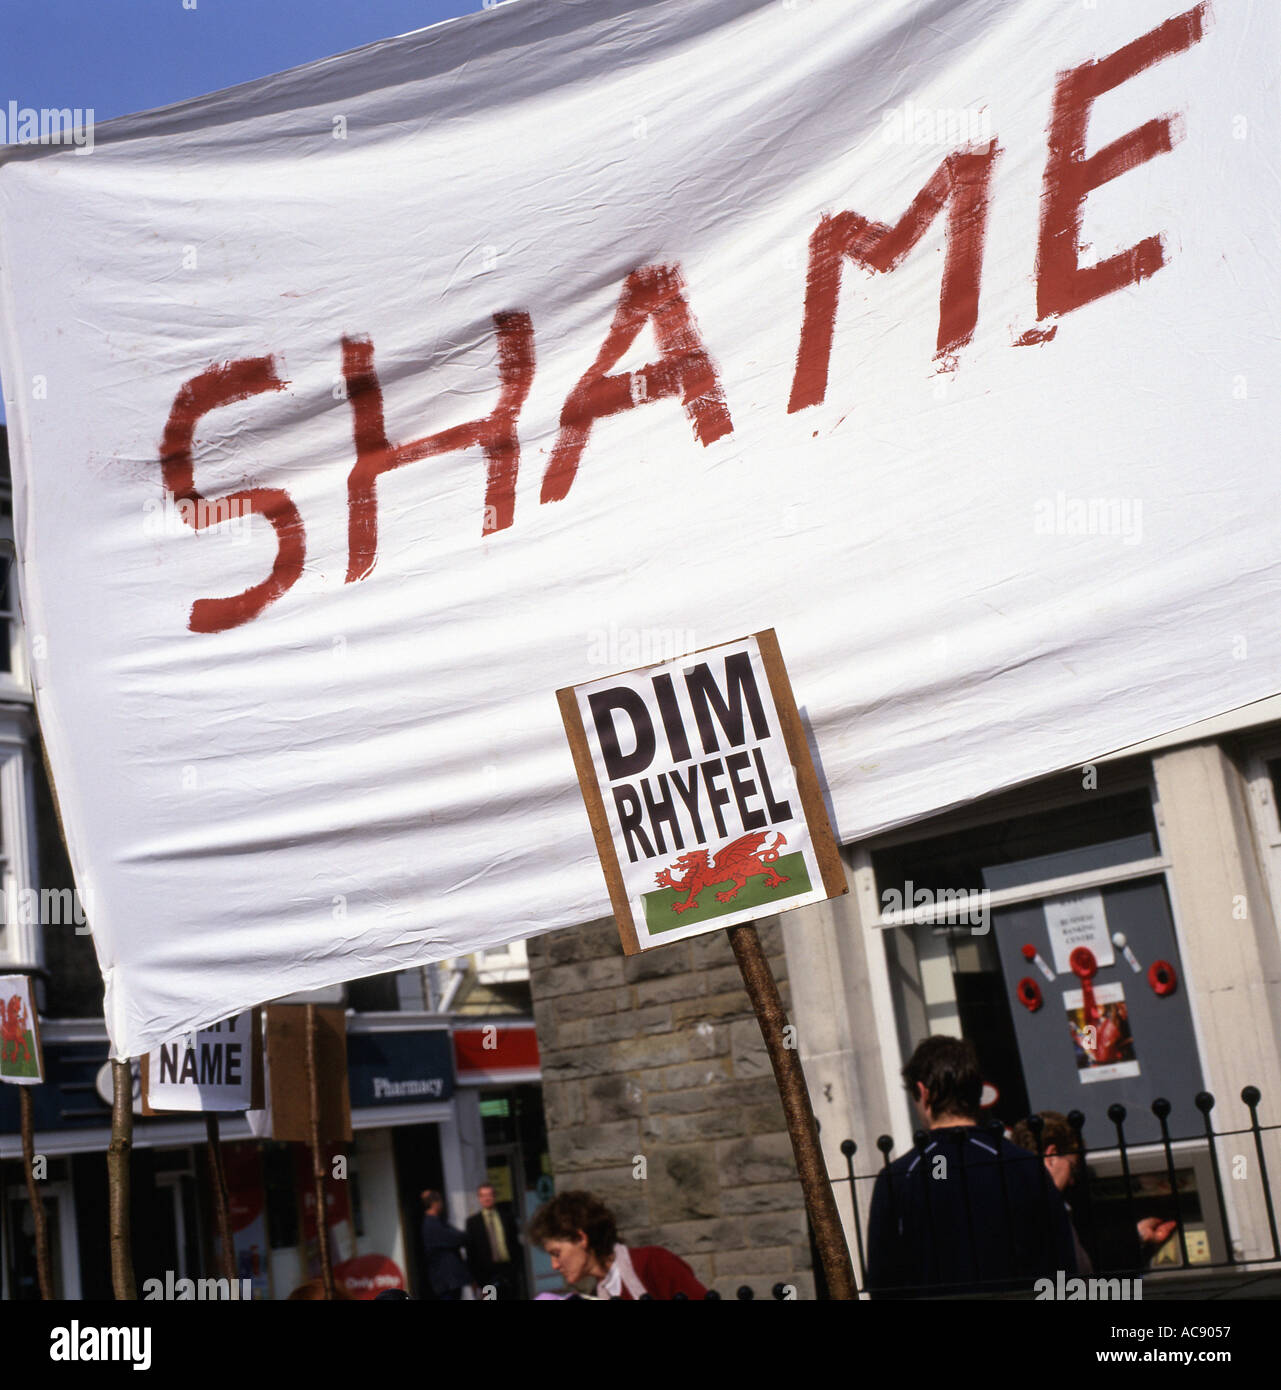 Un écriteau de protestation de langue galloise Dim Rhyfel et bannière de honte lors d'un rassemblement de guerre contre l'Irak dans la rue de Lampeter, Carmarthenshire, pays de Galles en mars 2003 Banque D'Images